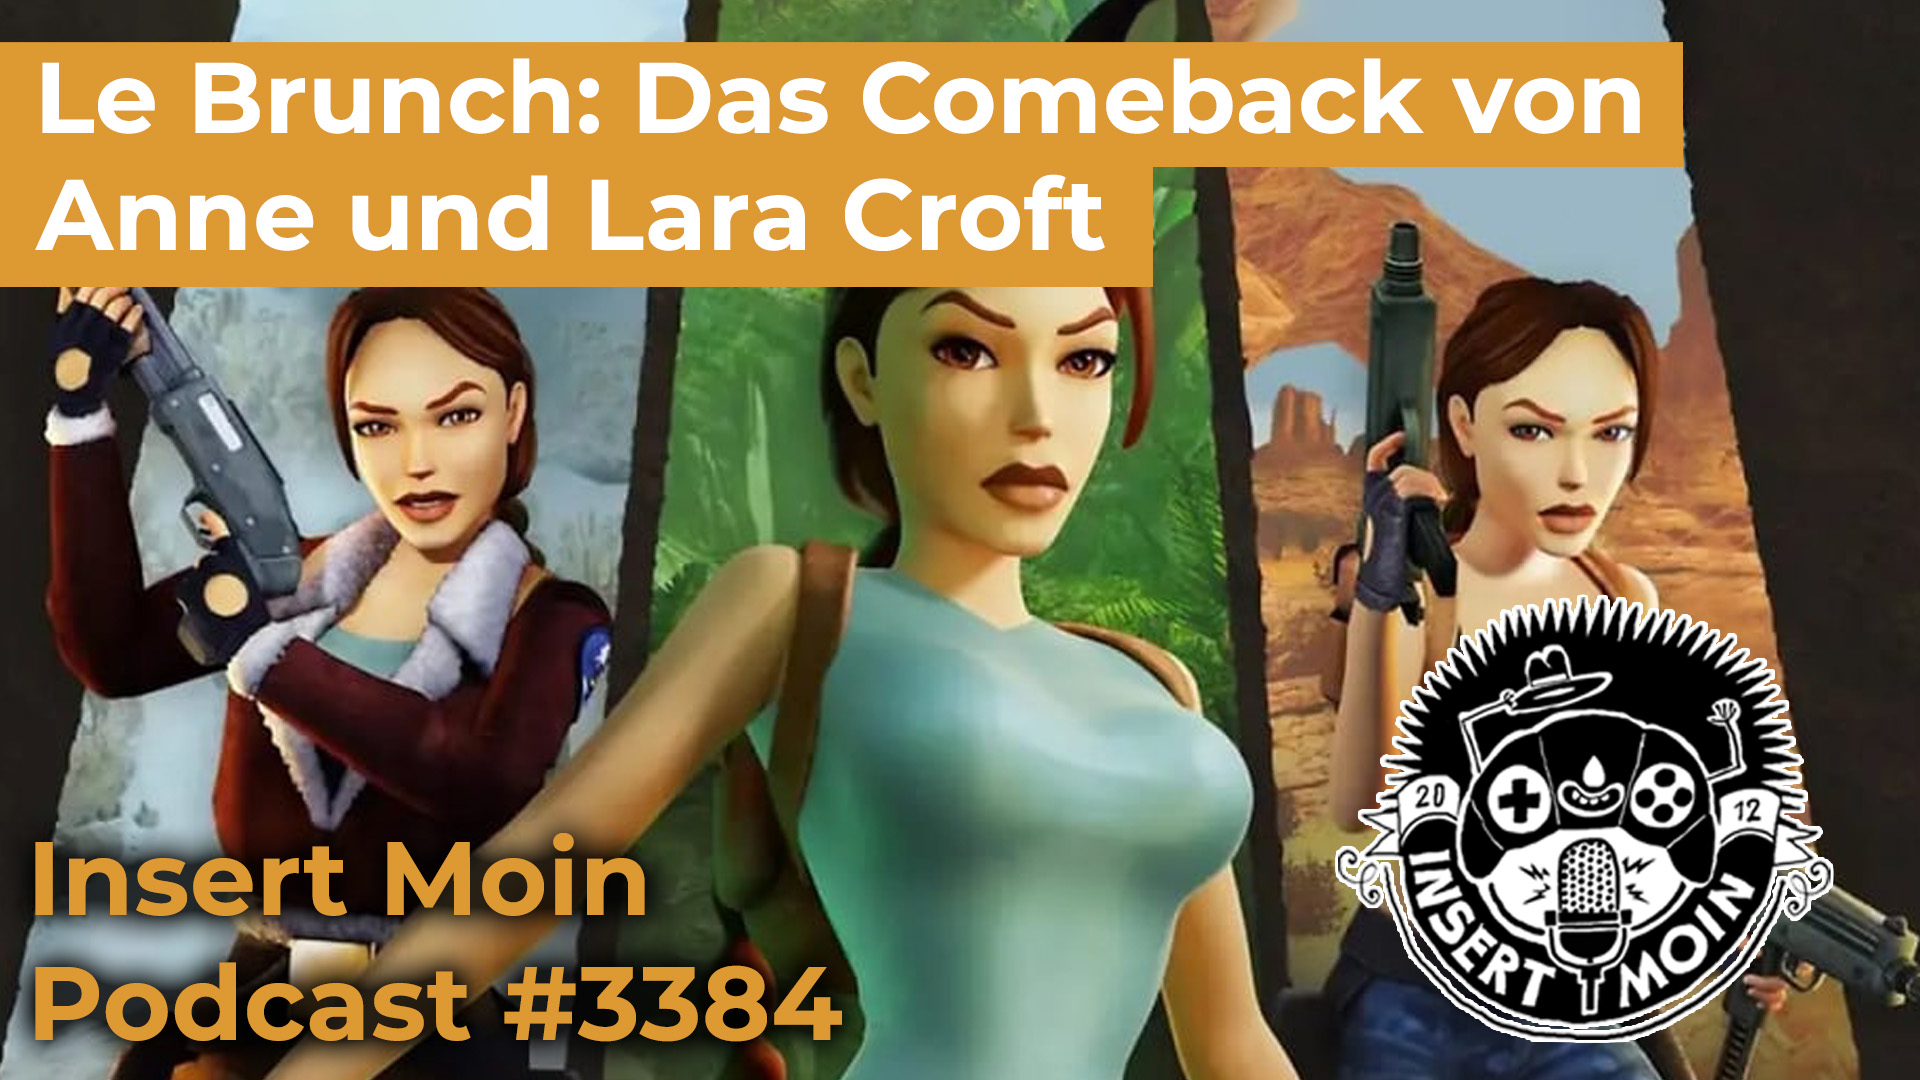 Le Brunch: Das Comeback von Anne und Lara Croft